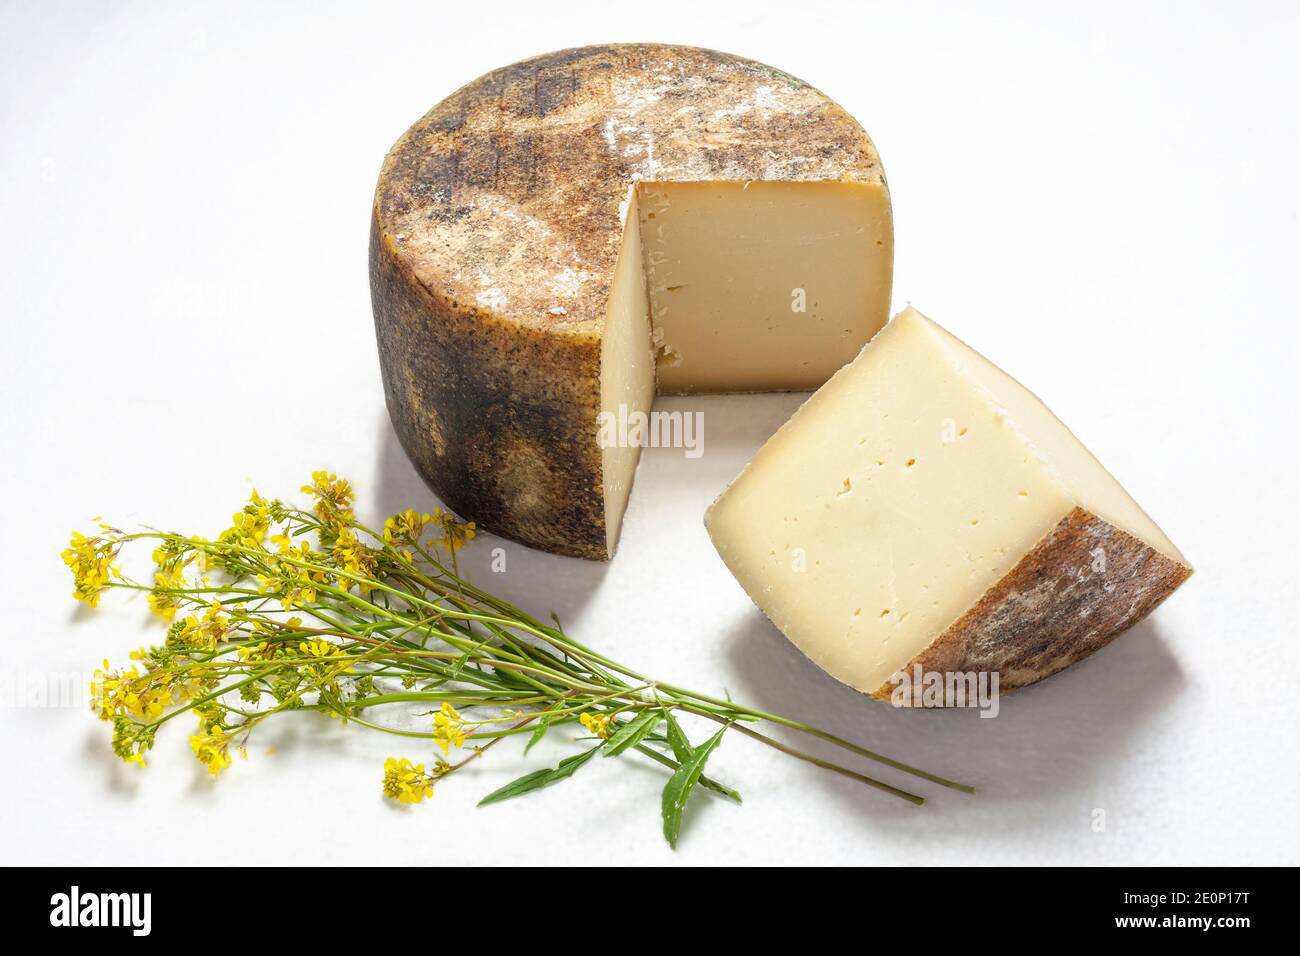 Slices of Italian pecorino cheese with monjtagna grass on a white background. Abruzzo, Italy, Europe Stock Photo